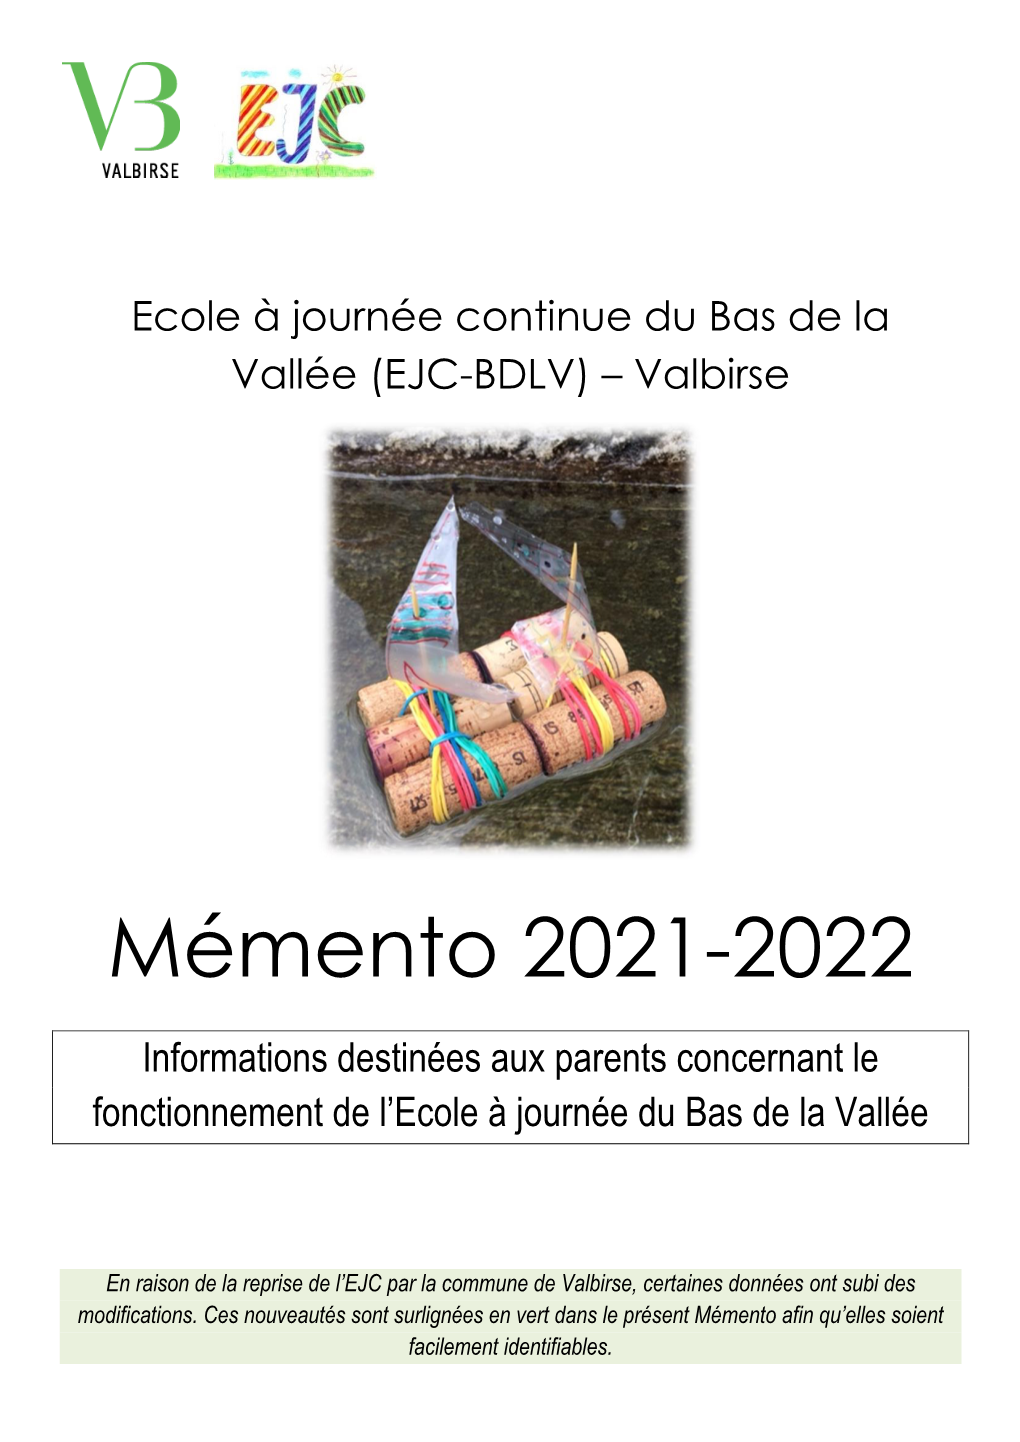 Mémento 2021-2022